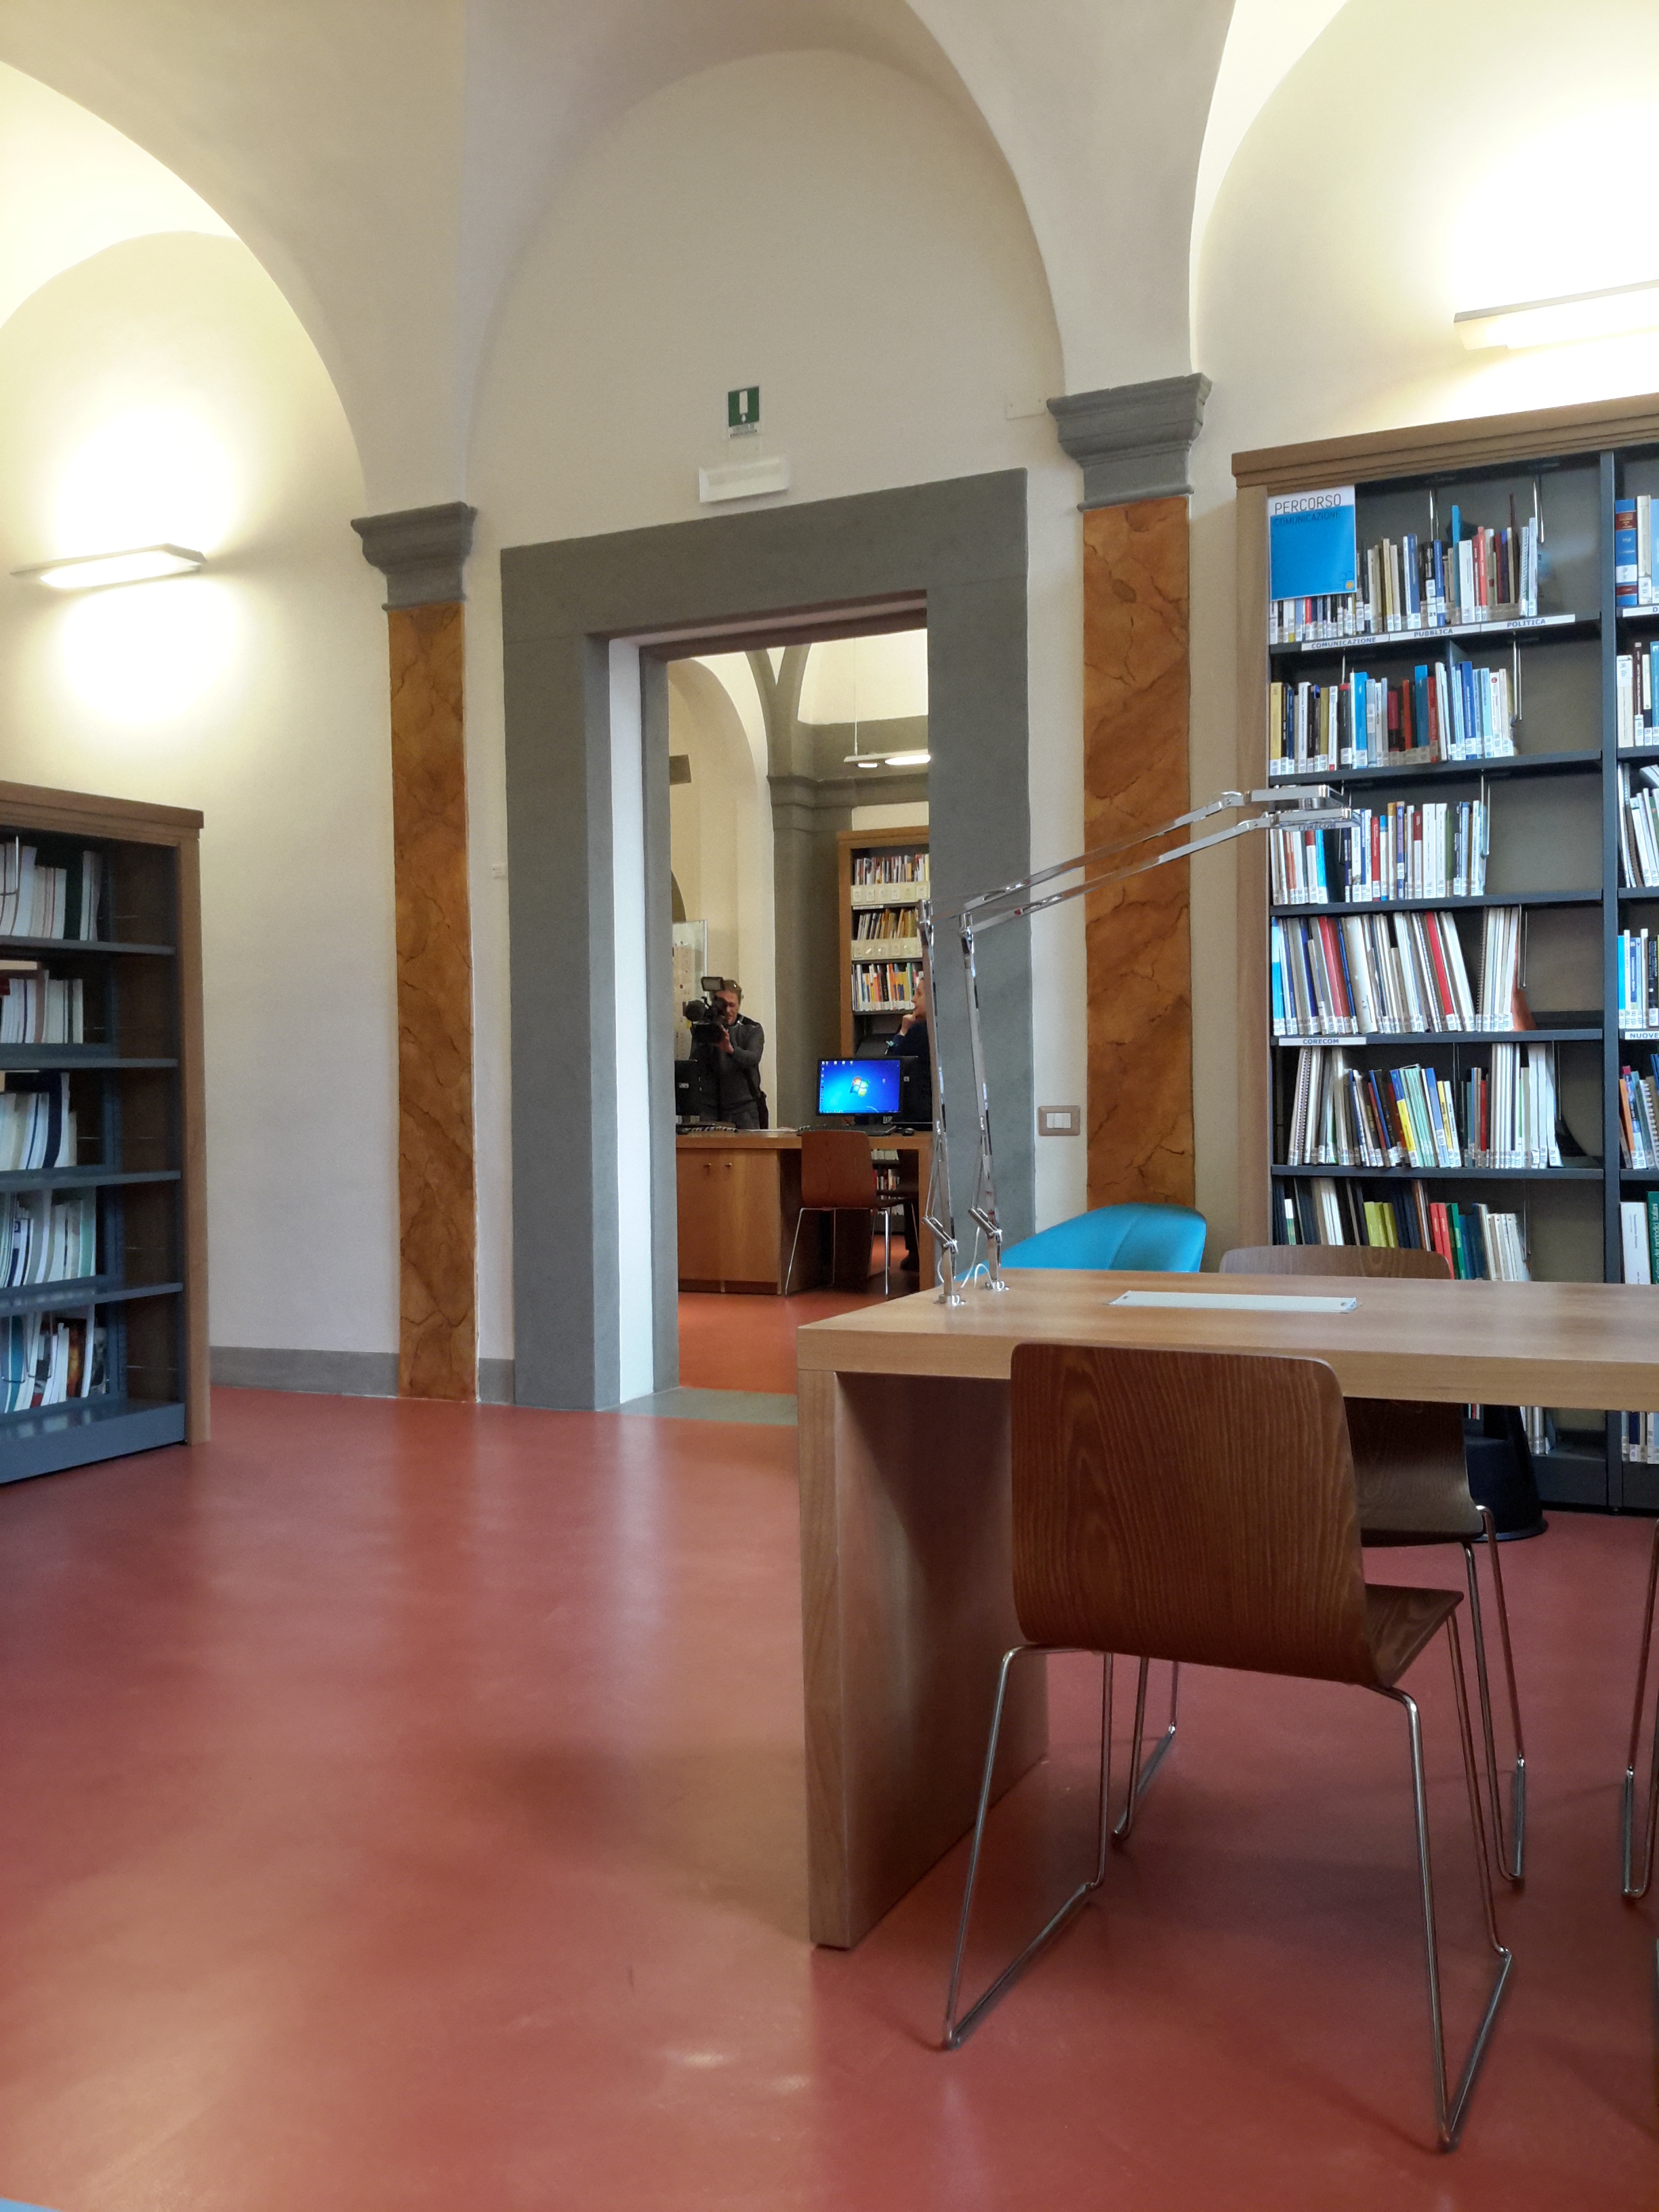 Giornata mondiale del libro, dalla Toscana Manifesto per nuova visione della biblioteca